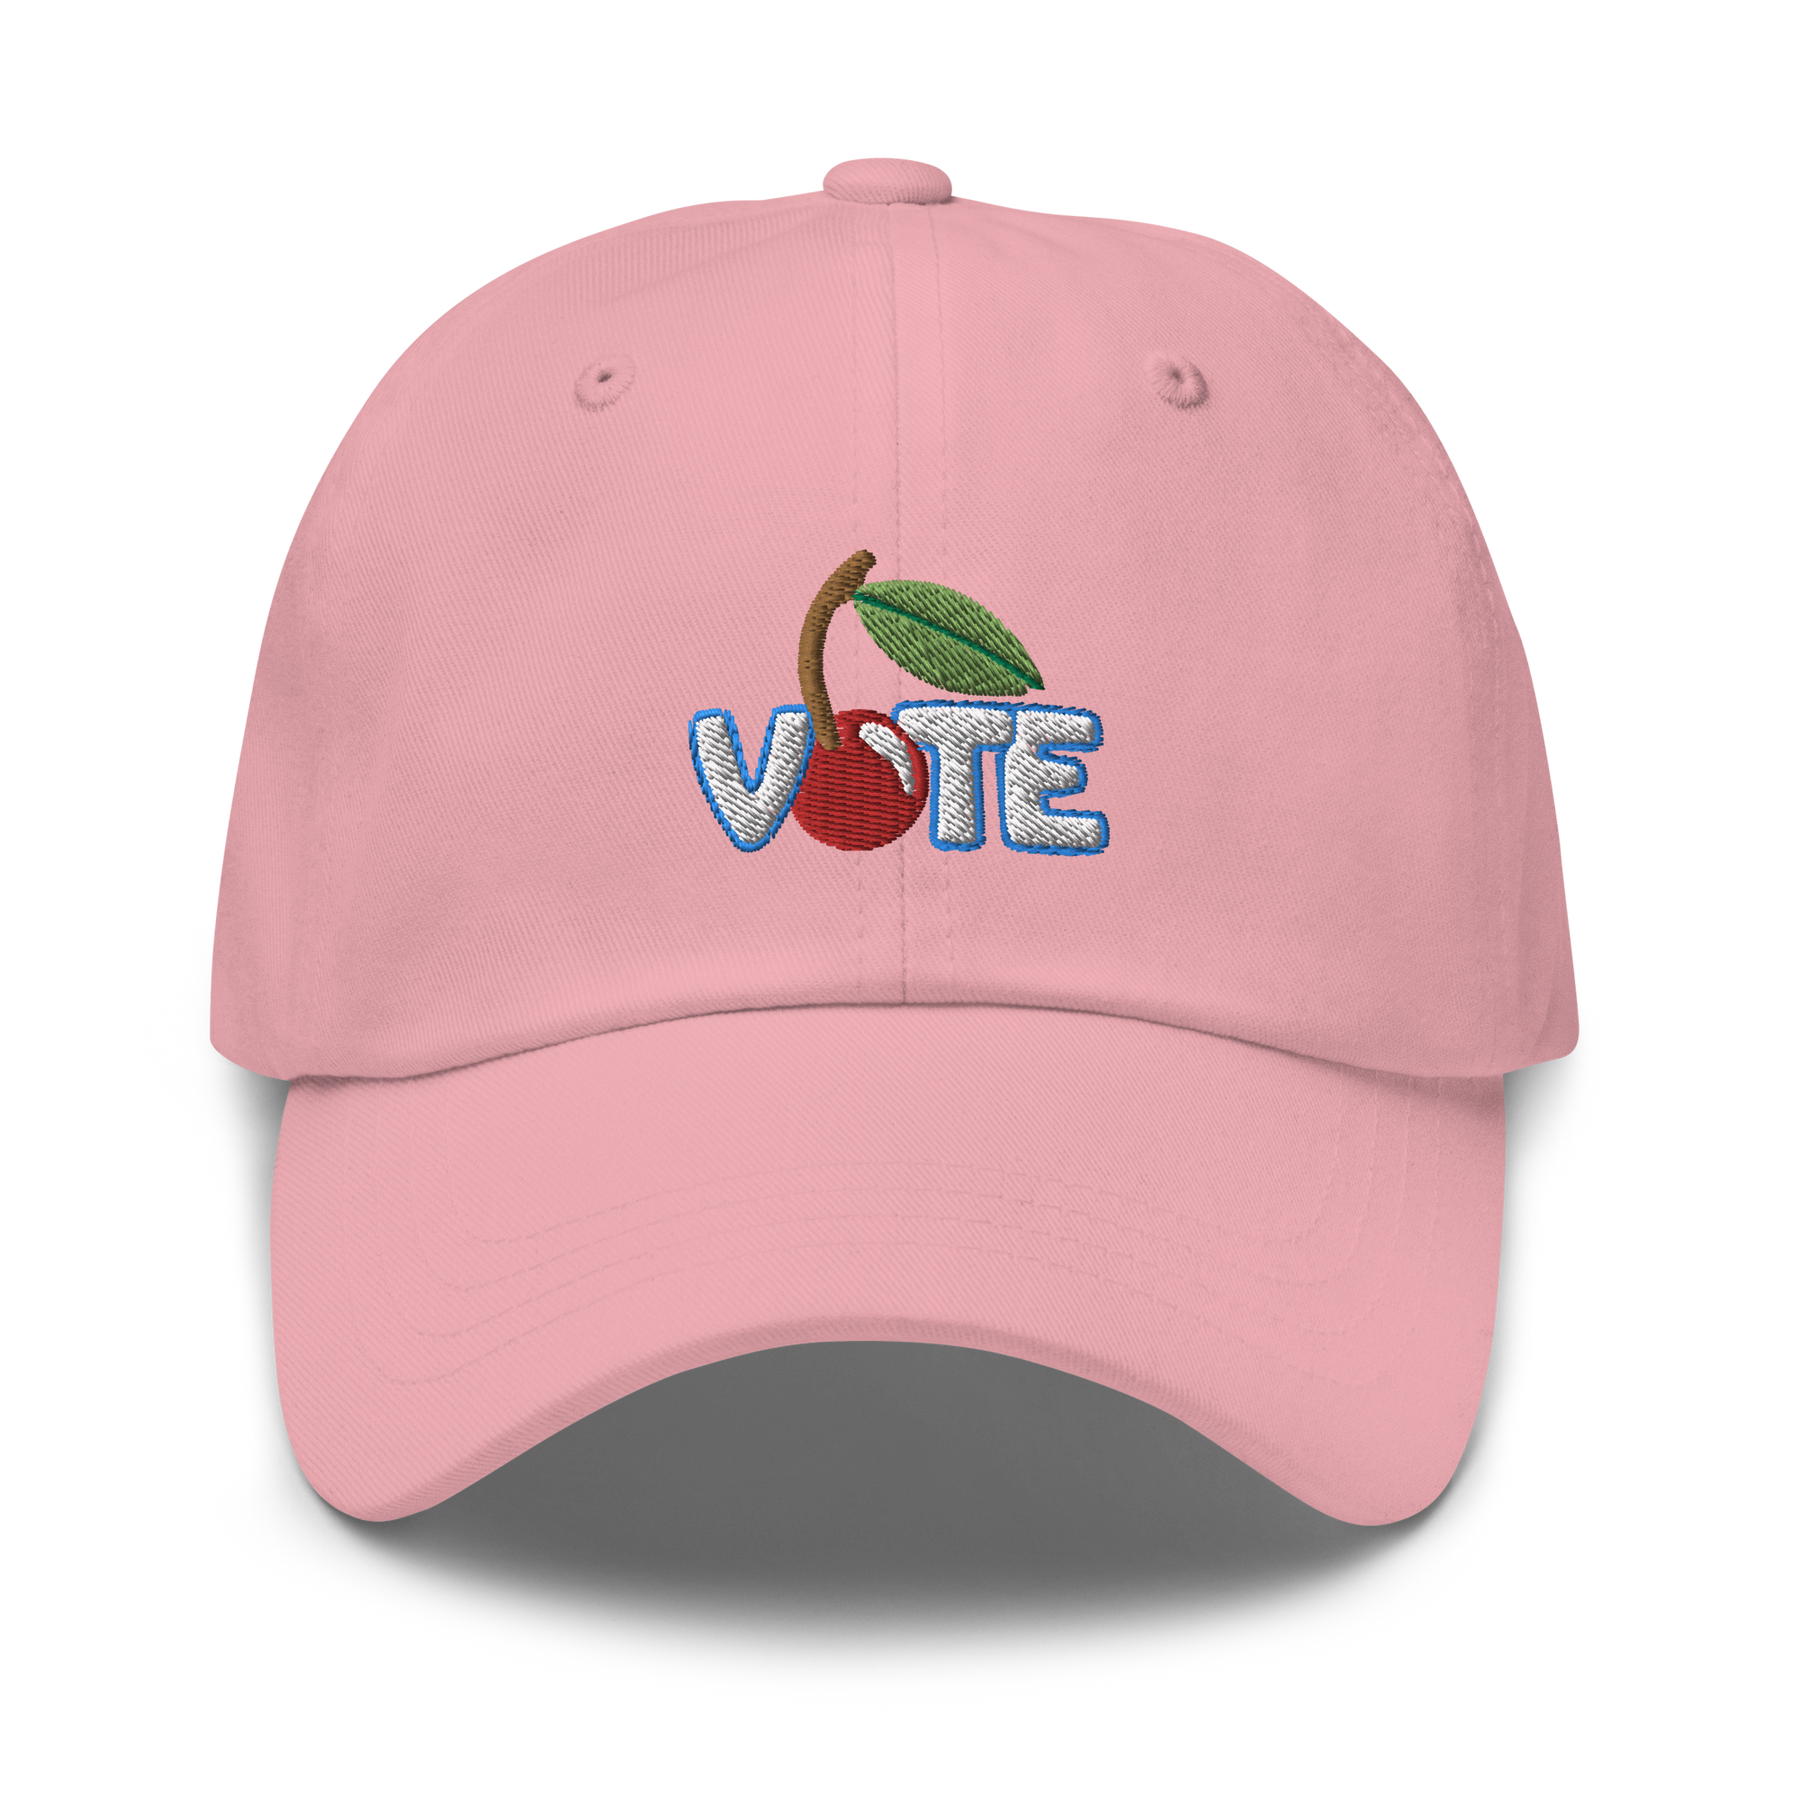 Vote Hat